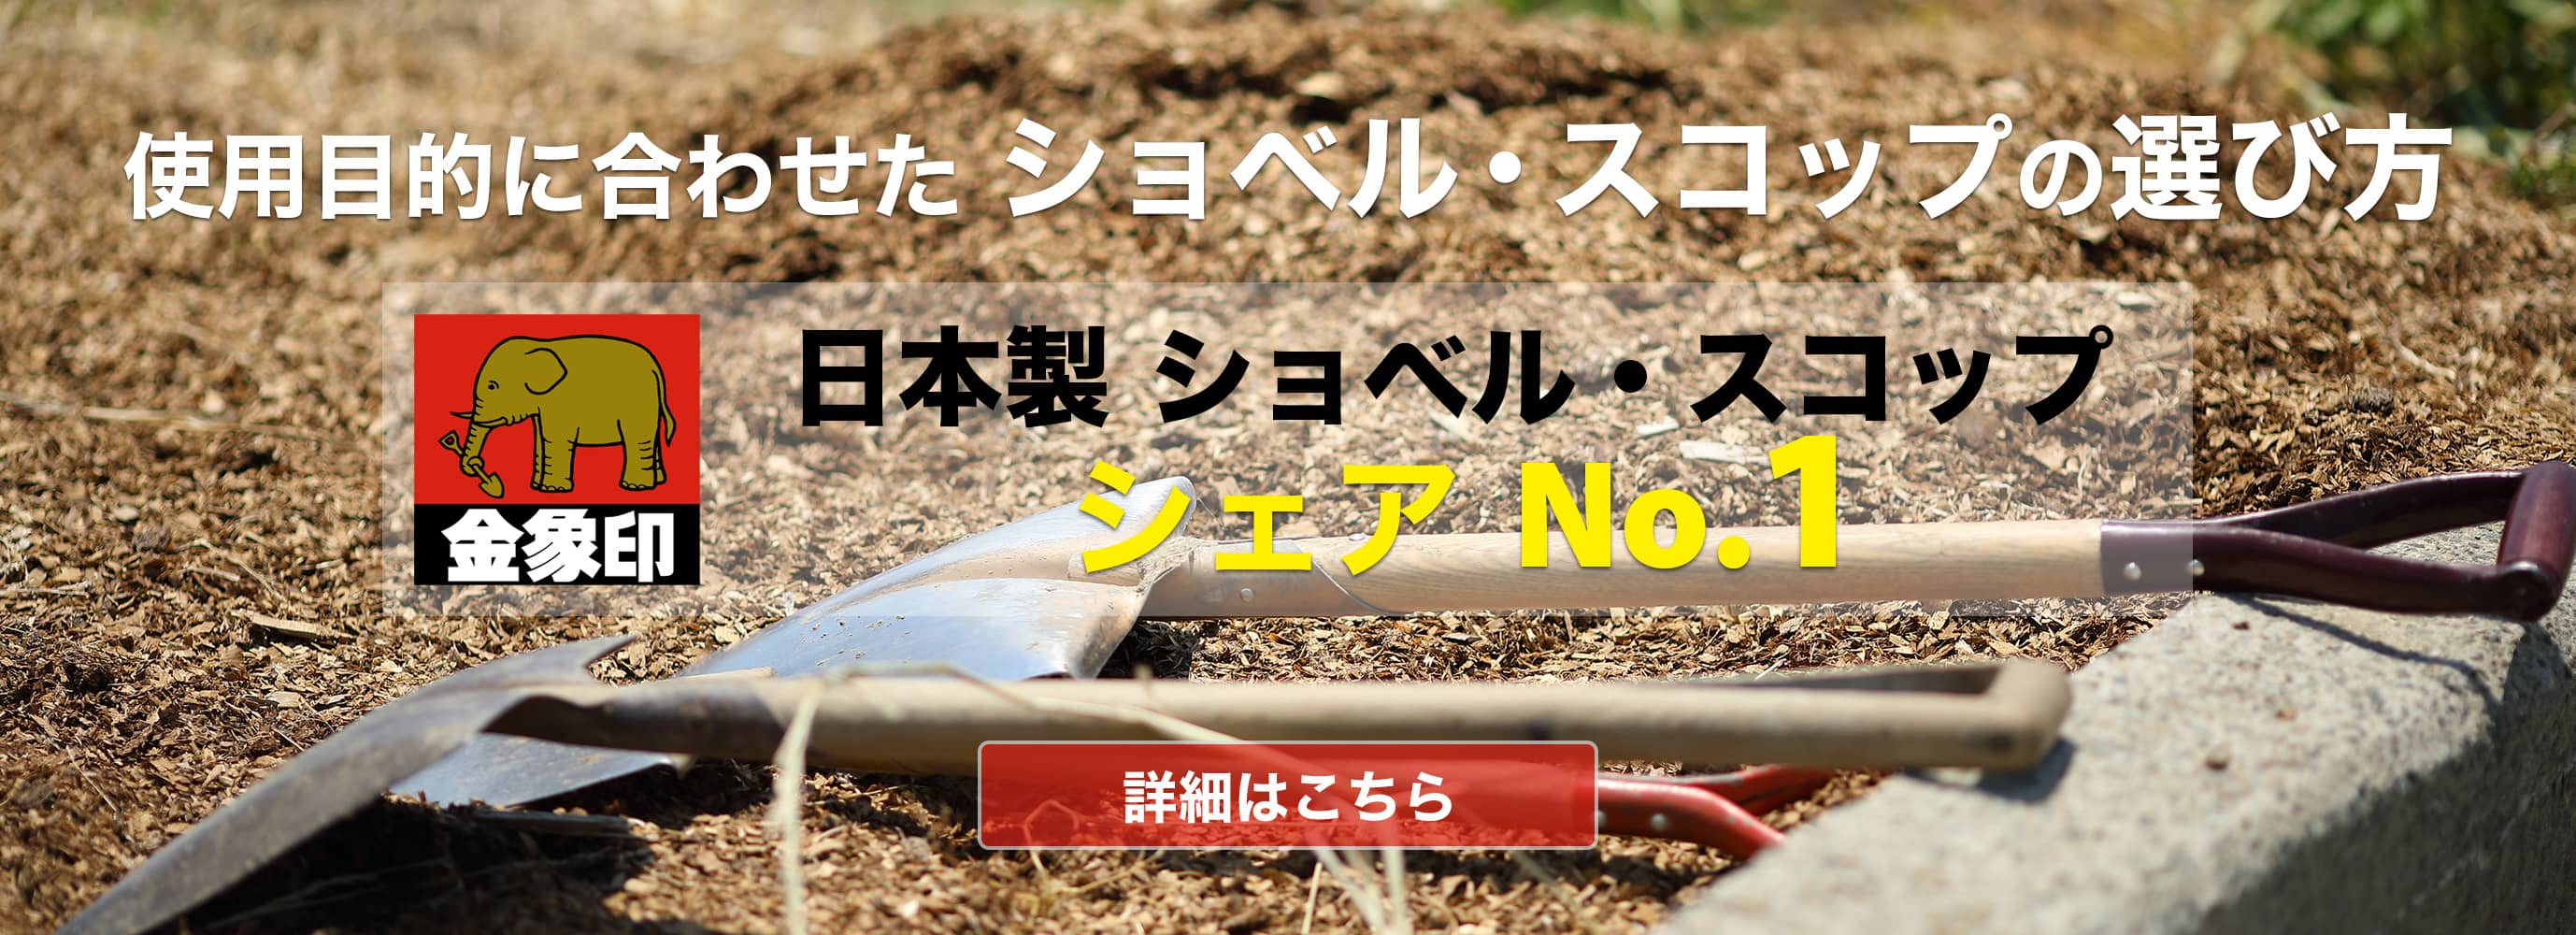 金象印 日本製ショベル・スコップ シェアNo.1